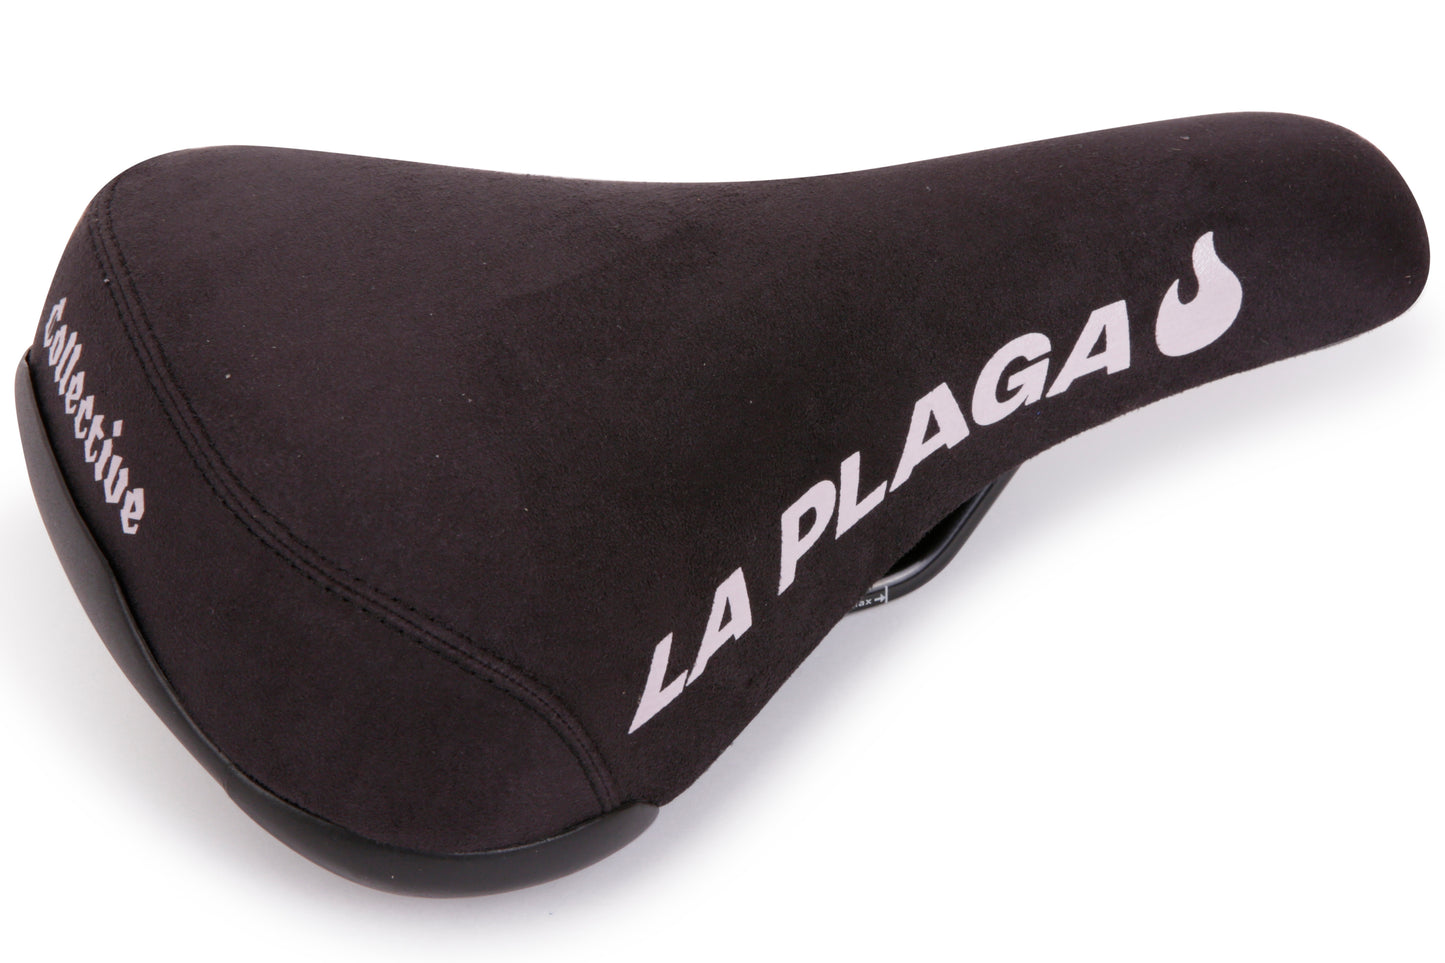 'LA PLAGA' SEAT